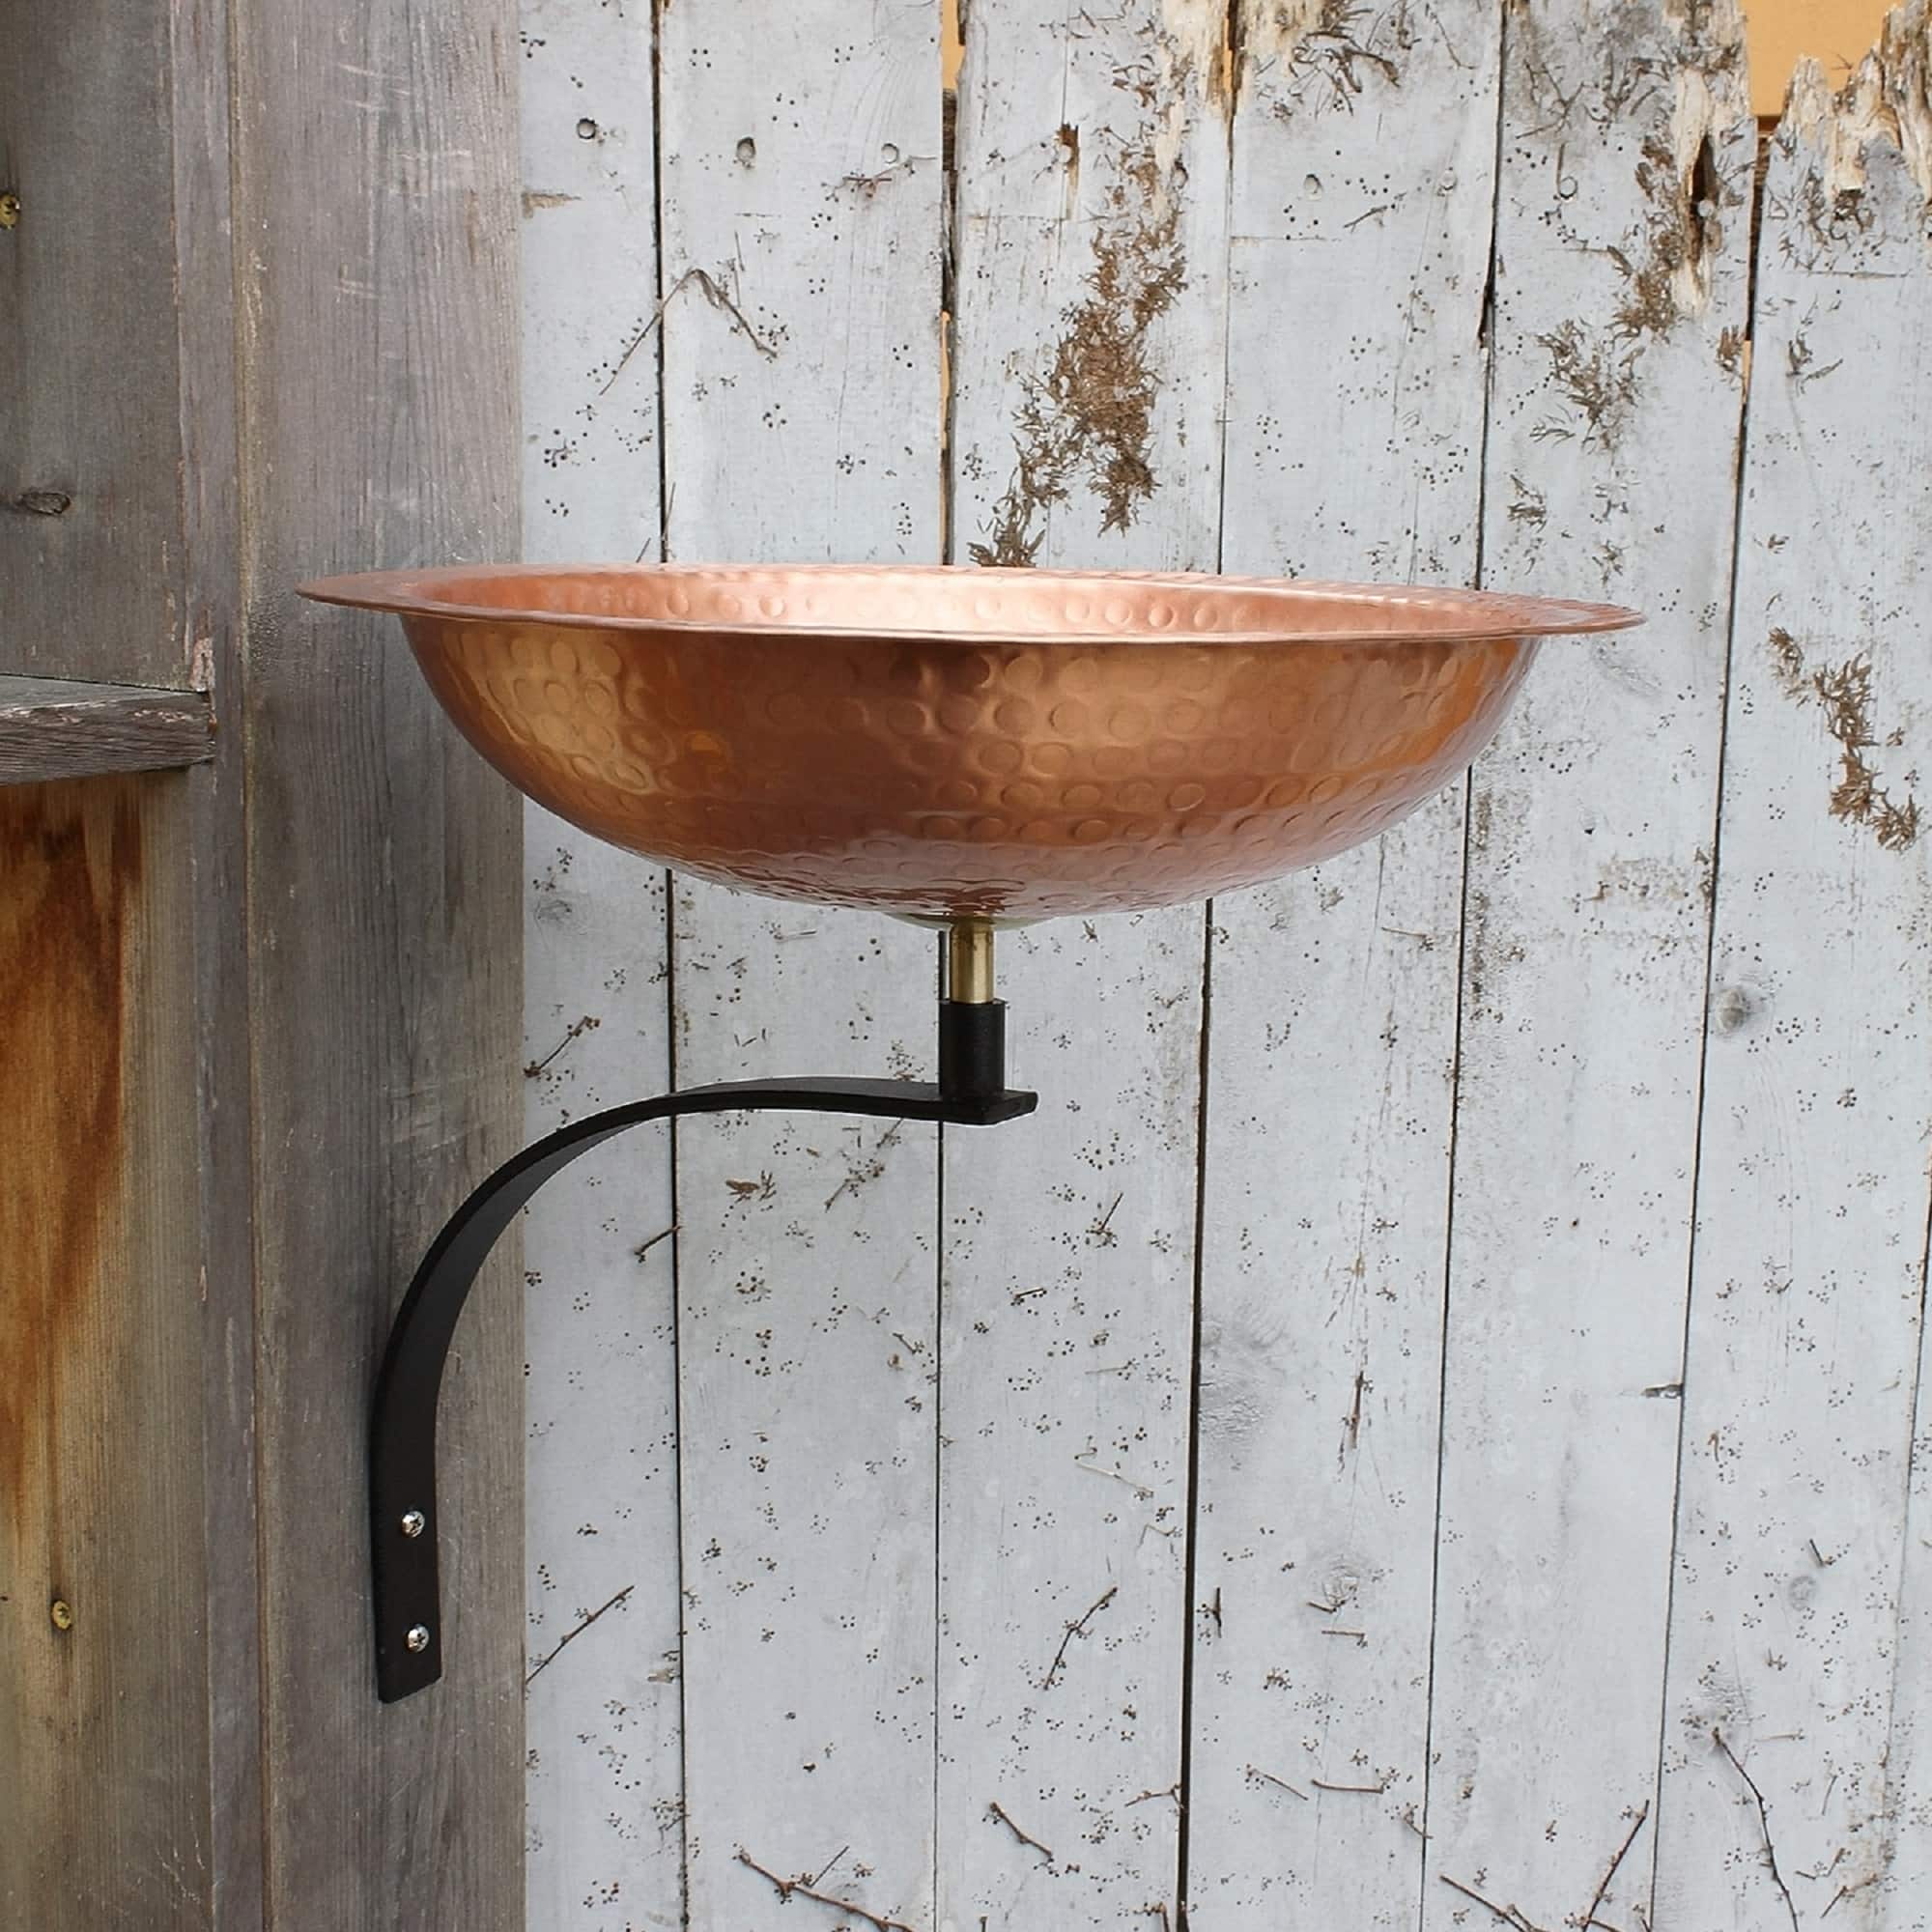 Achla Designs Hammered Solid Copper Birdbath w/Wall Mount Bracket, 12. ...